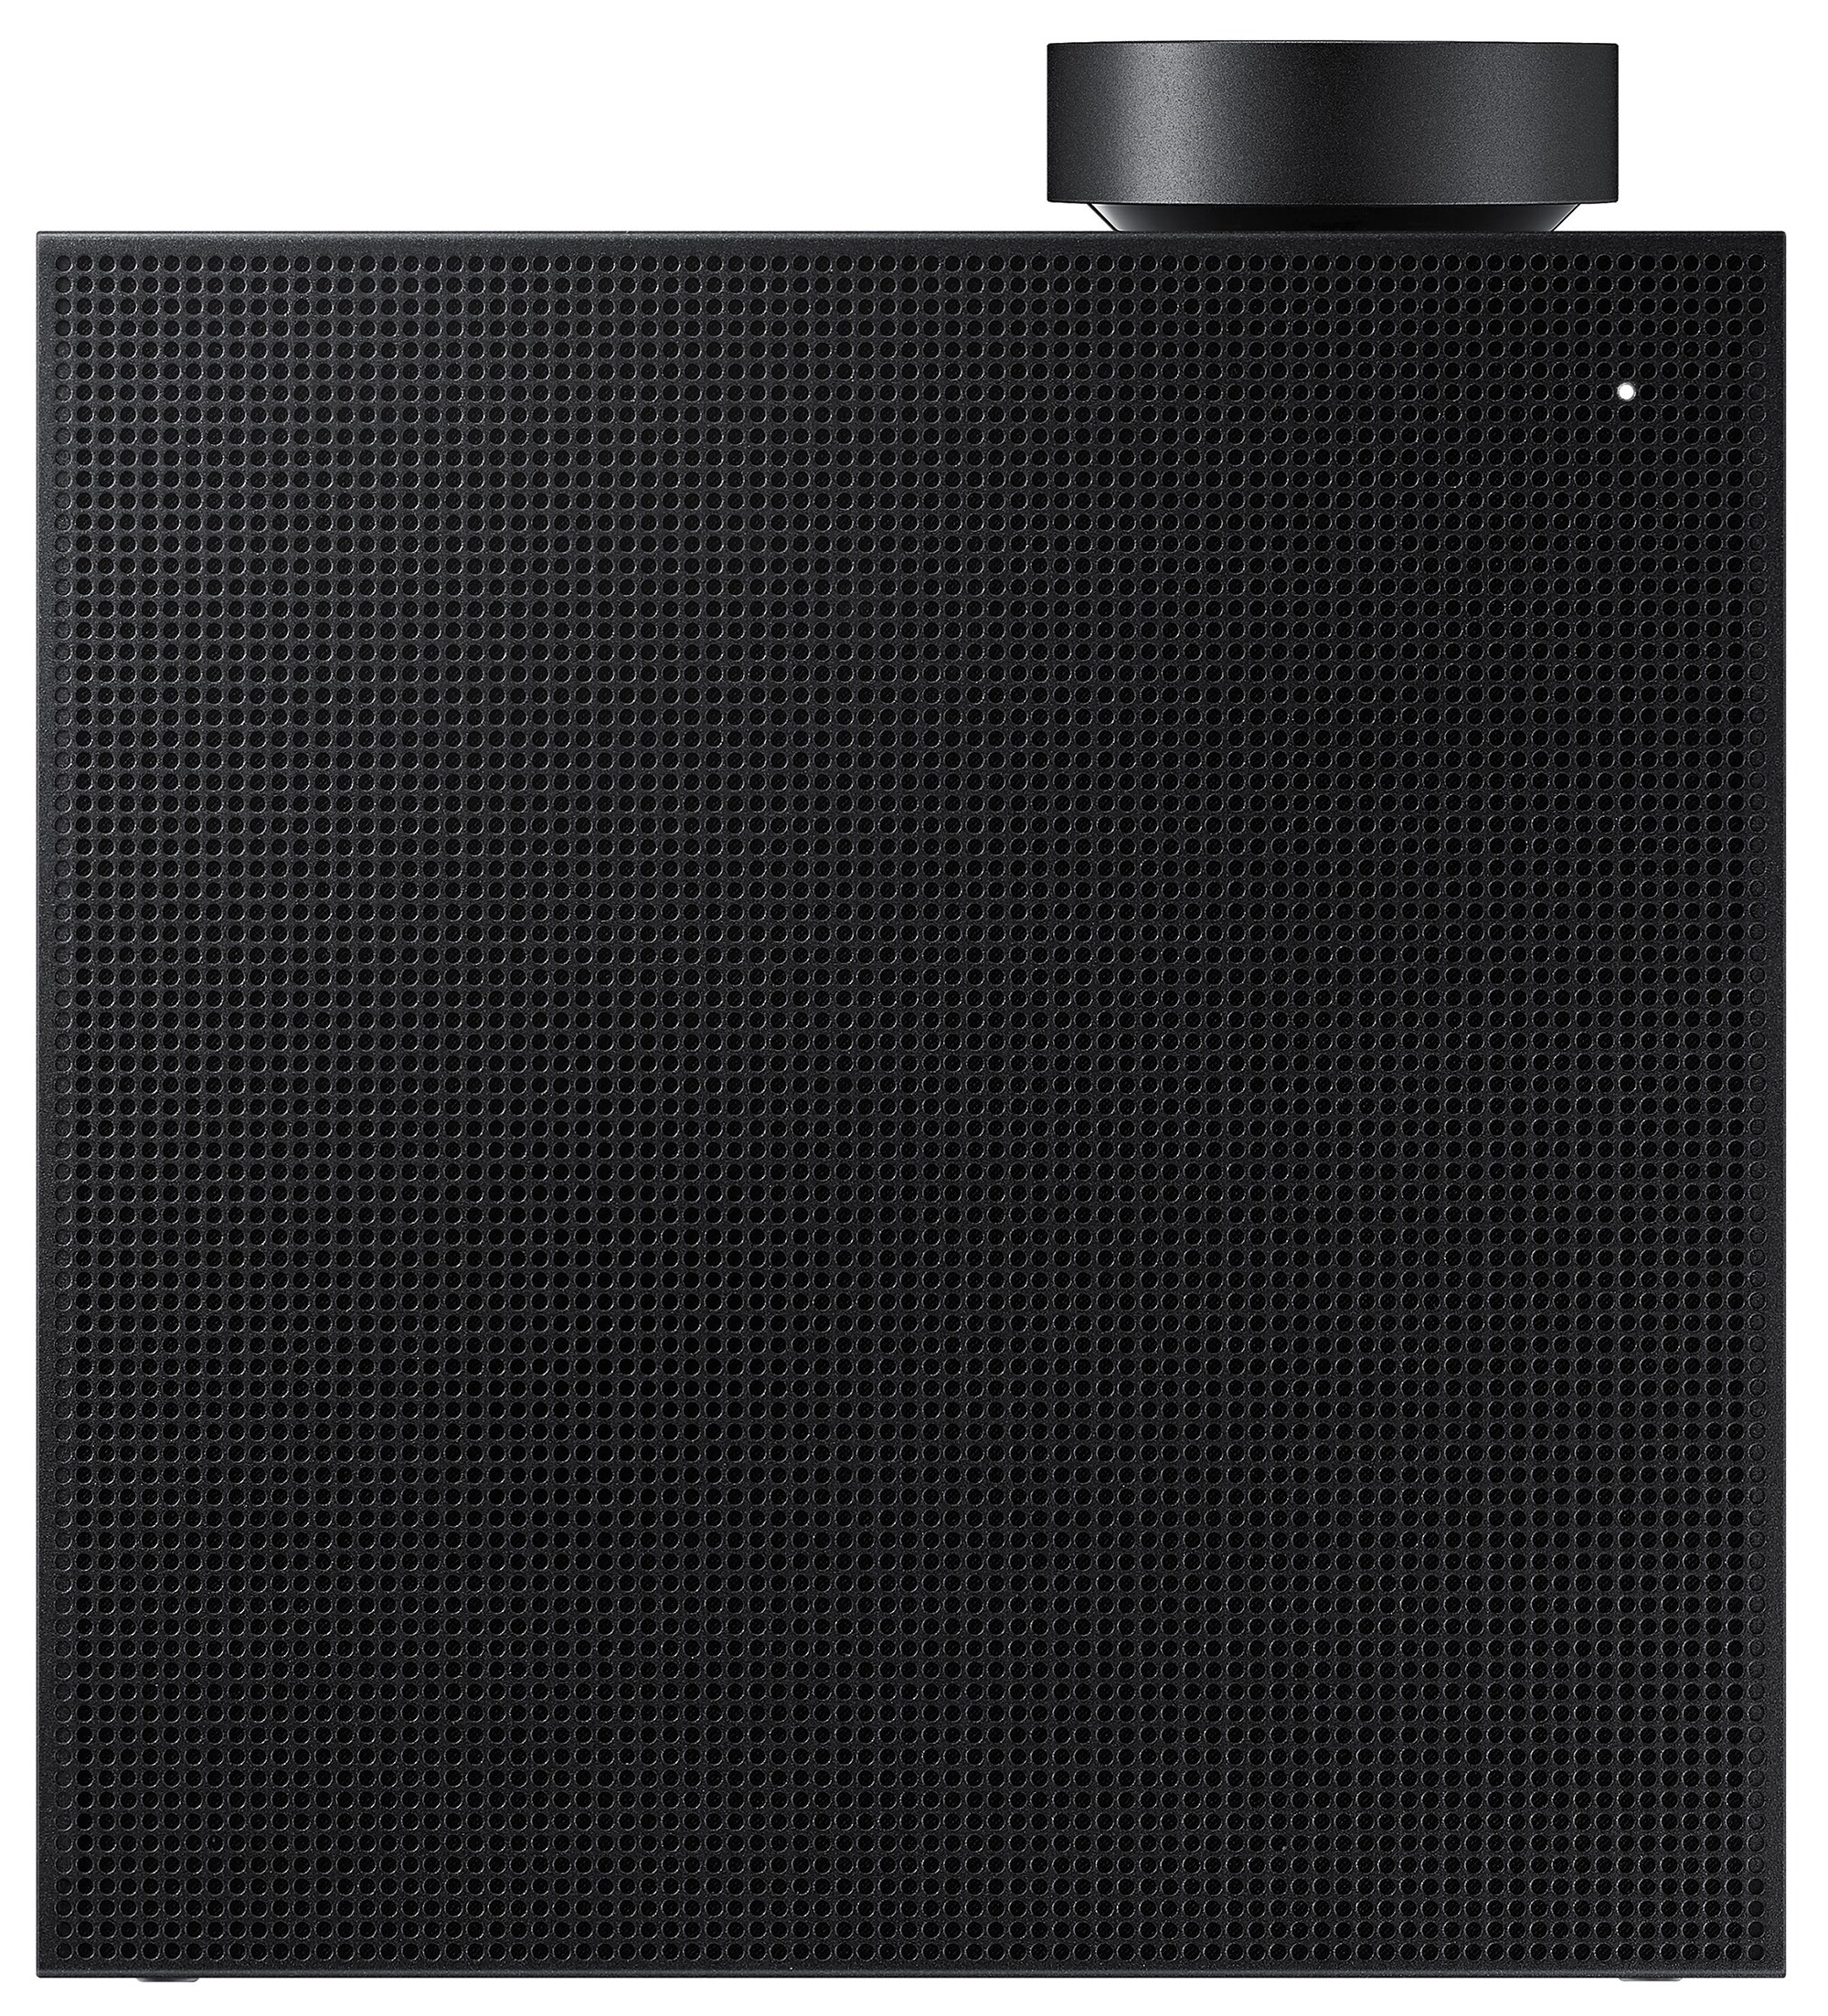 Samsung højtaler VL350/XE (sort) - Multiroom højttalere - Elgiganten